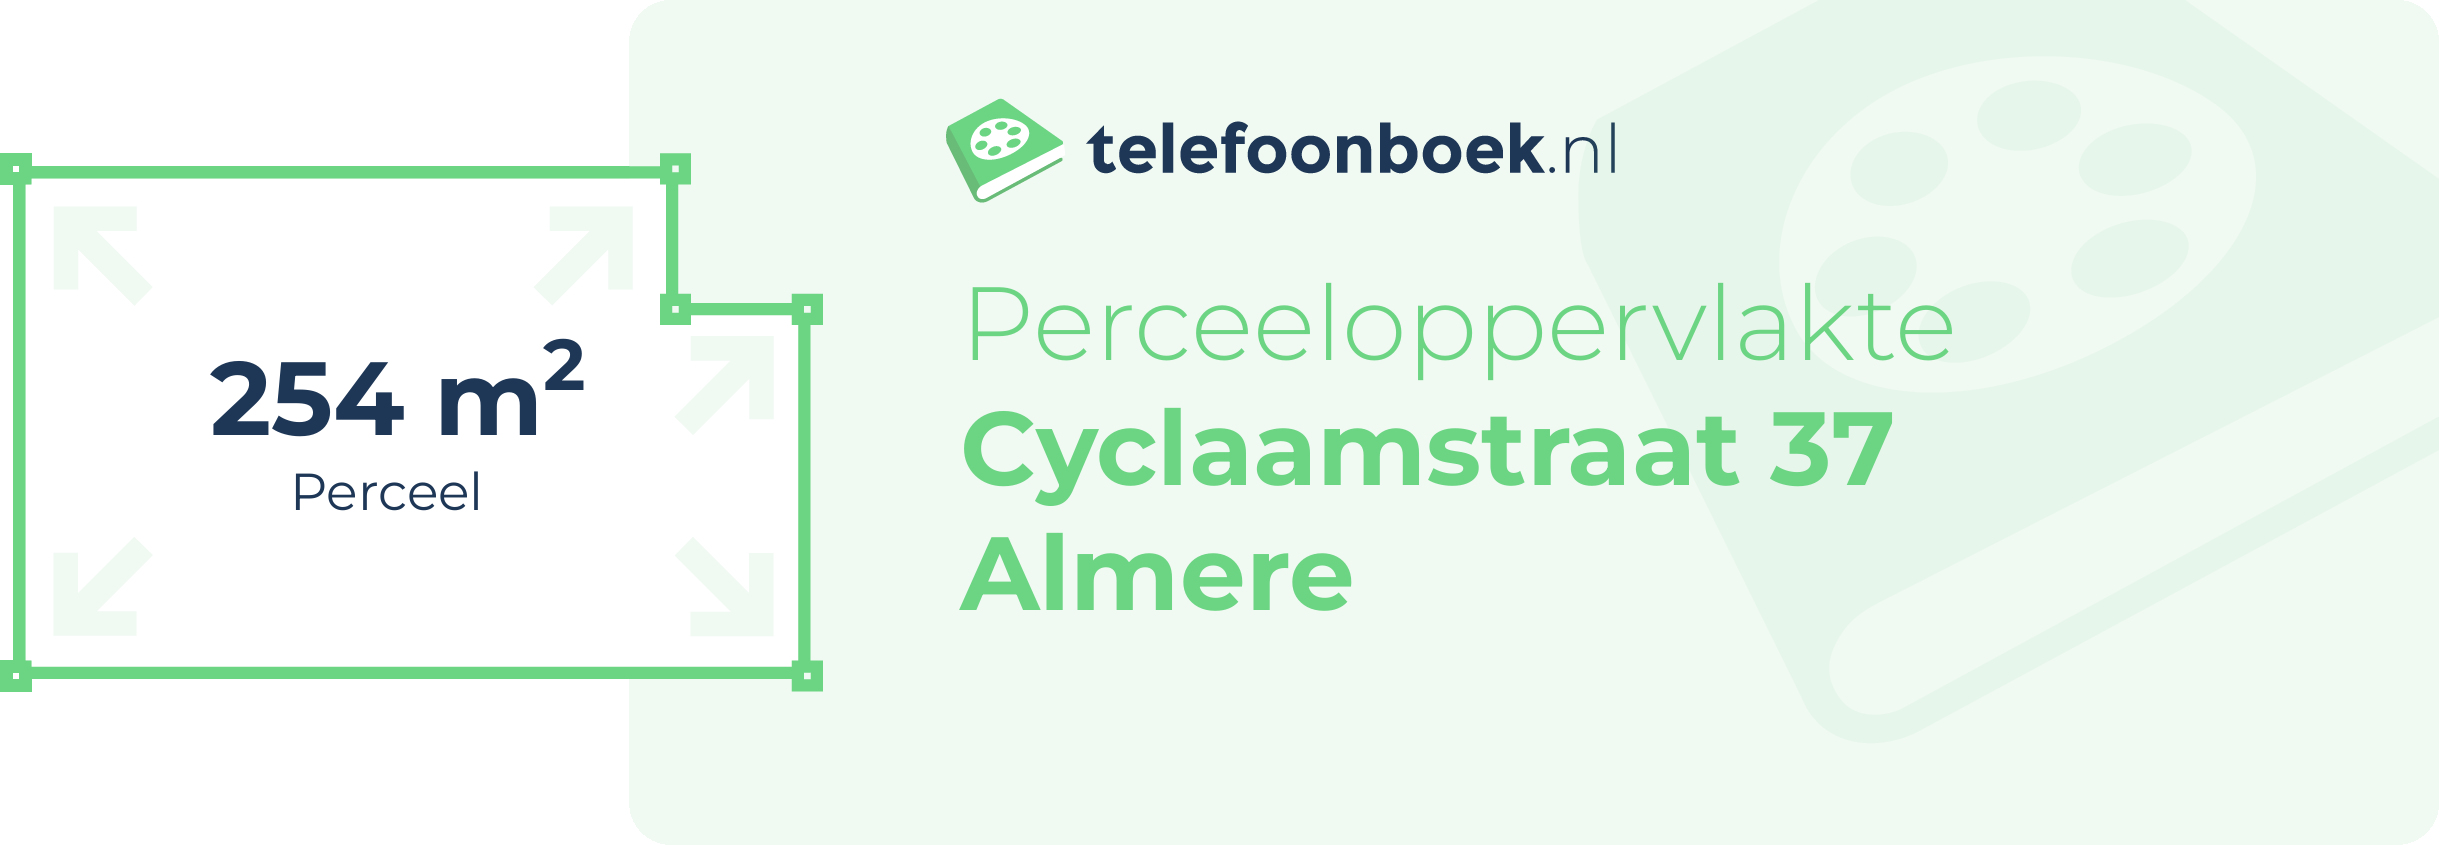 Perceeloppervlakte Cyclaamstraat 37 Almere